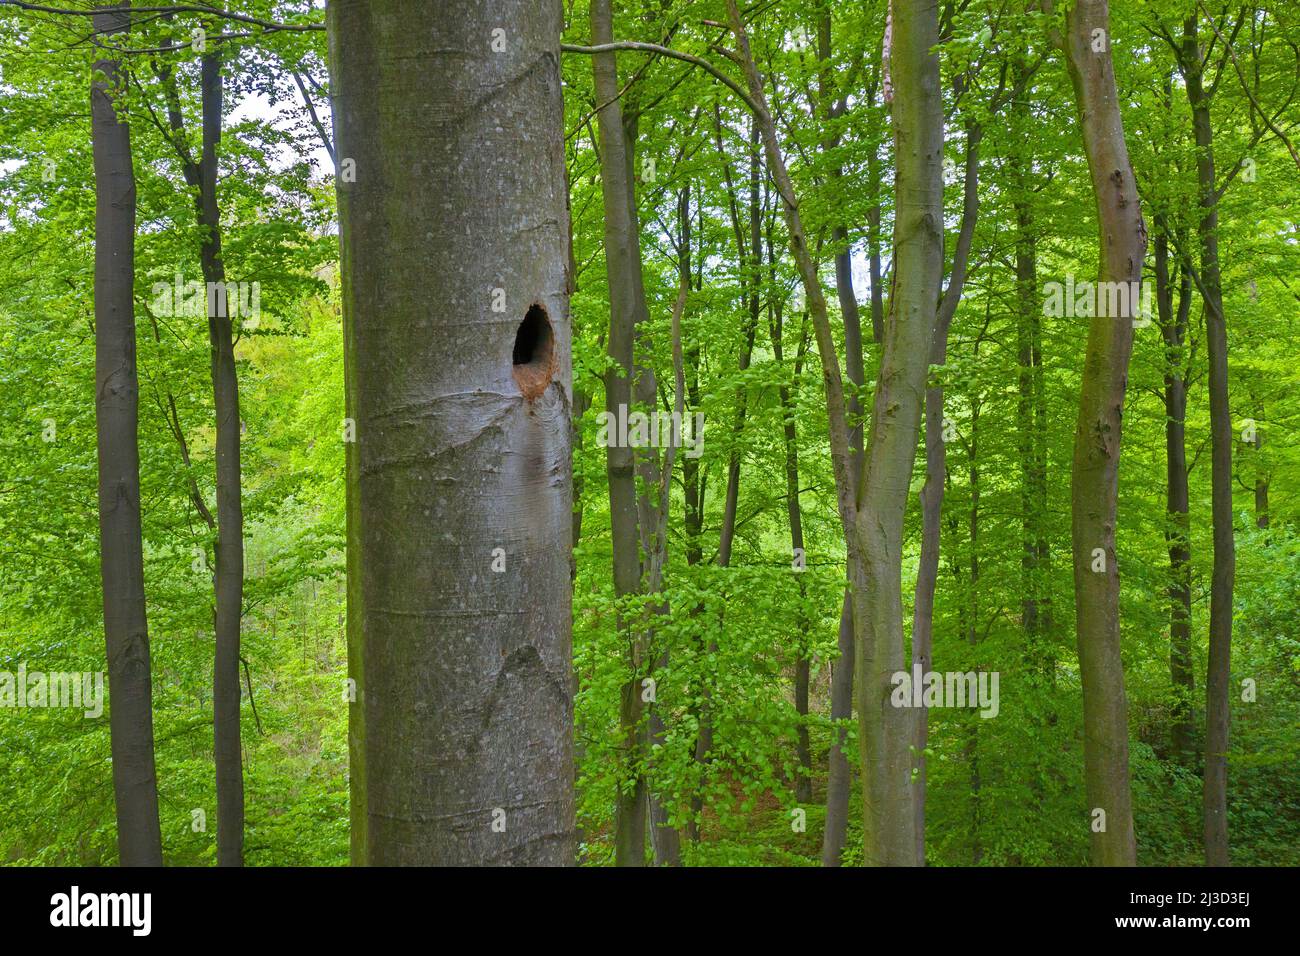 Nido / agujero de anidación de carpintero negro (Dryocopus martius) martillado en tronco de haya en bosque caducifolio / madera en primavera Foto de stock